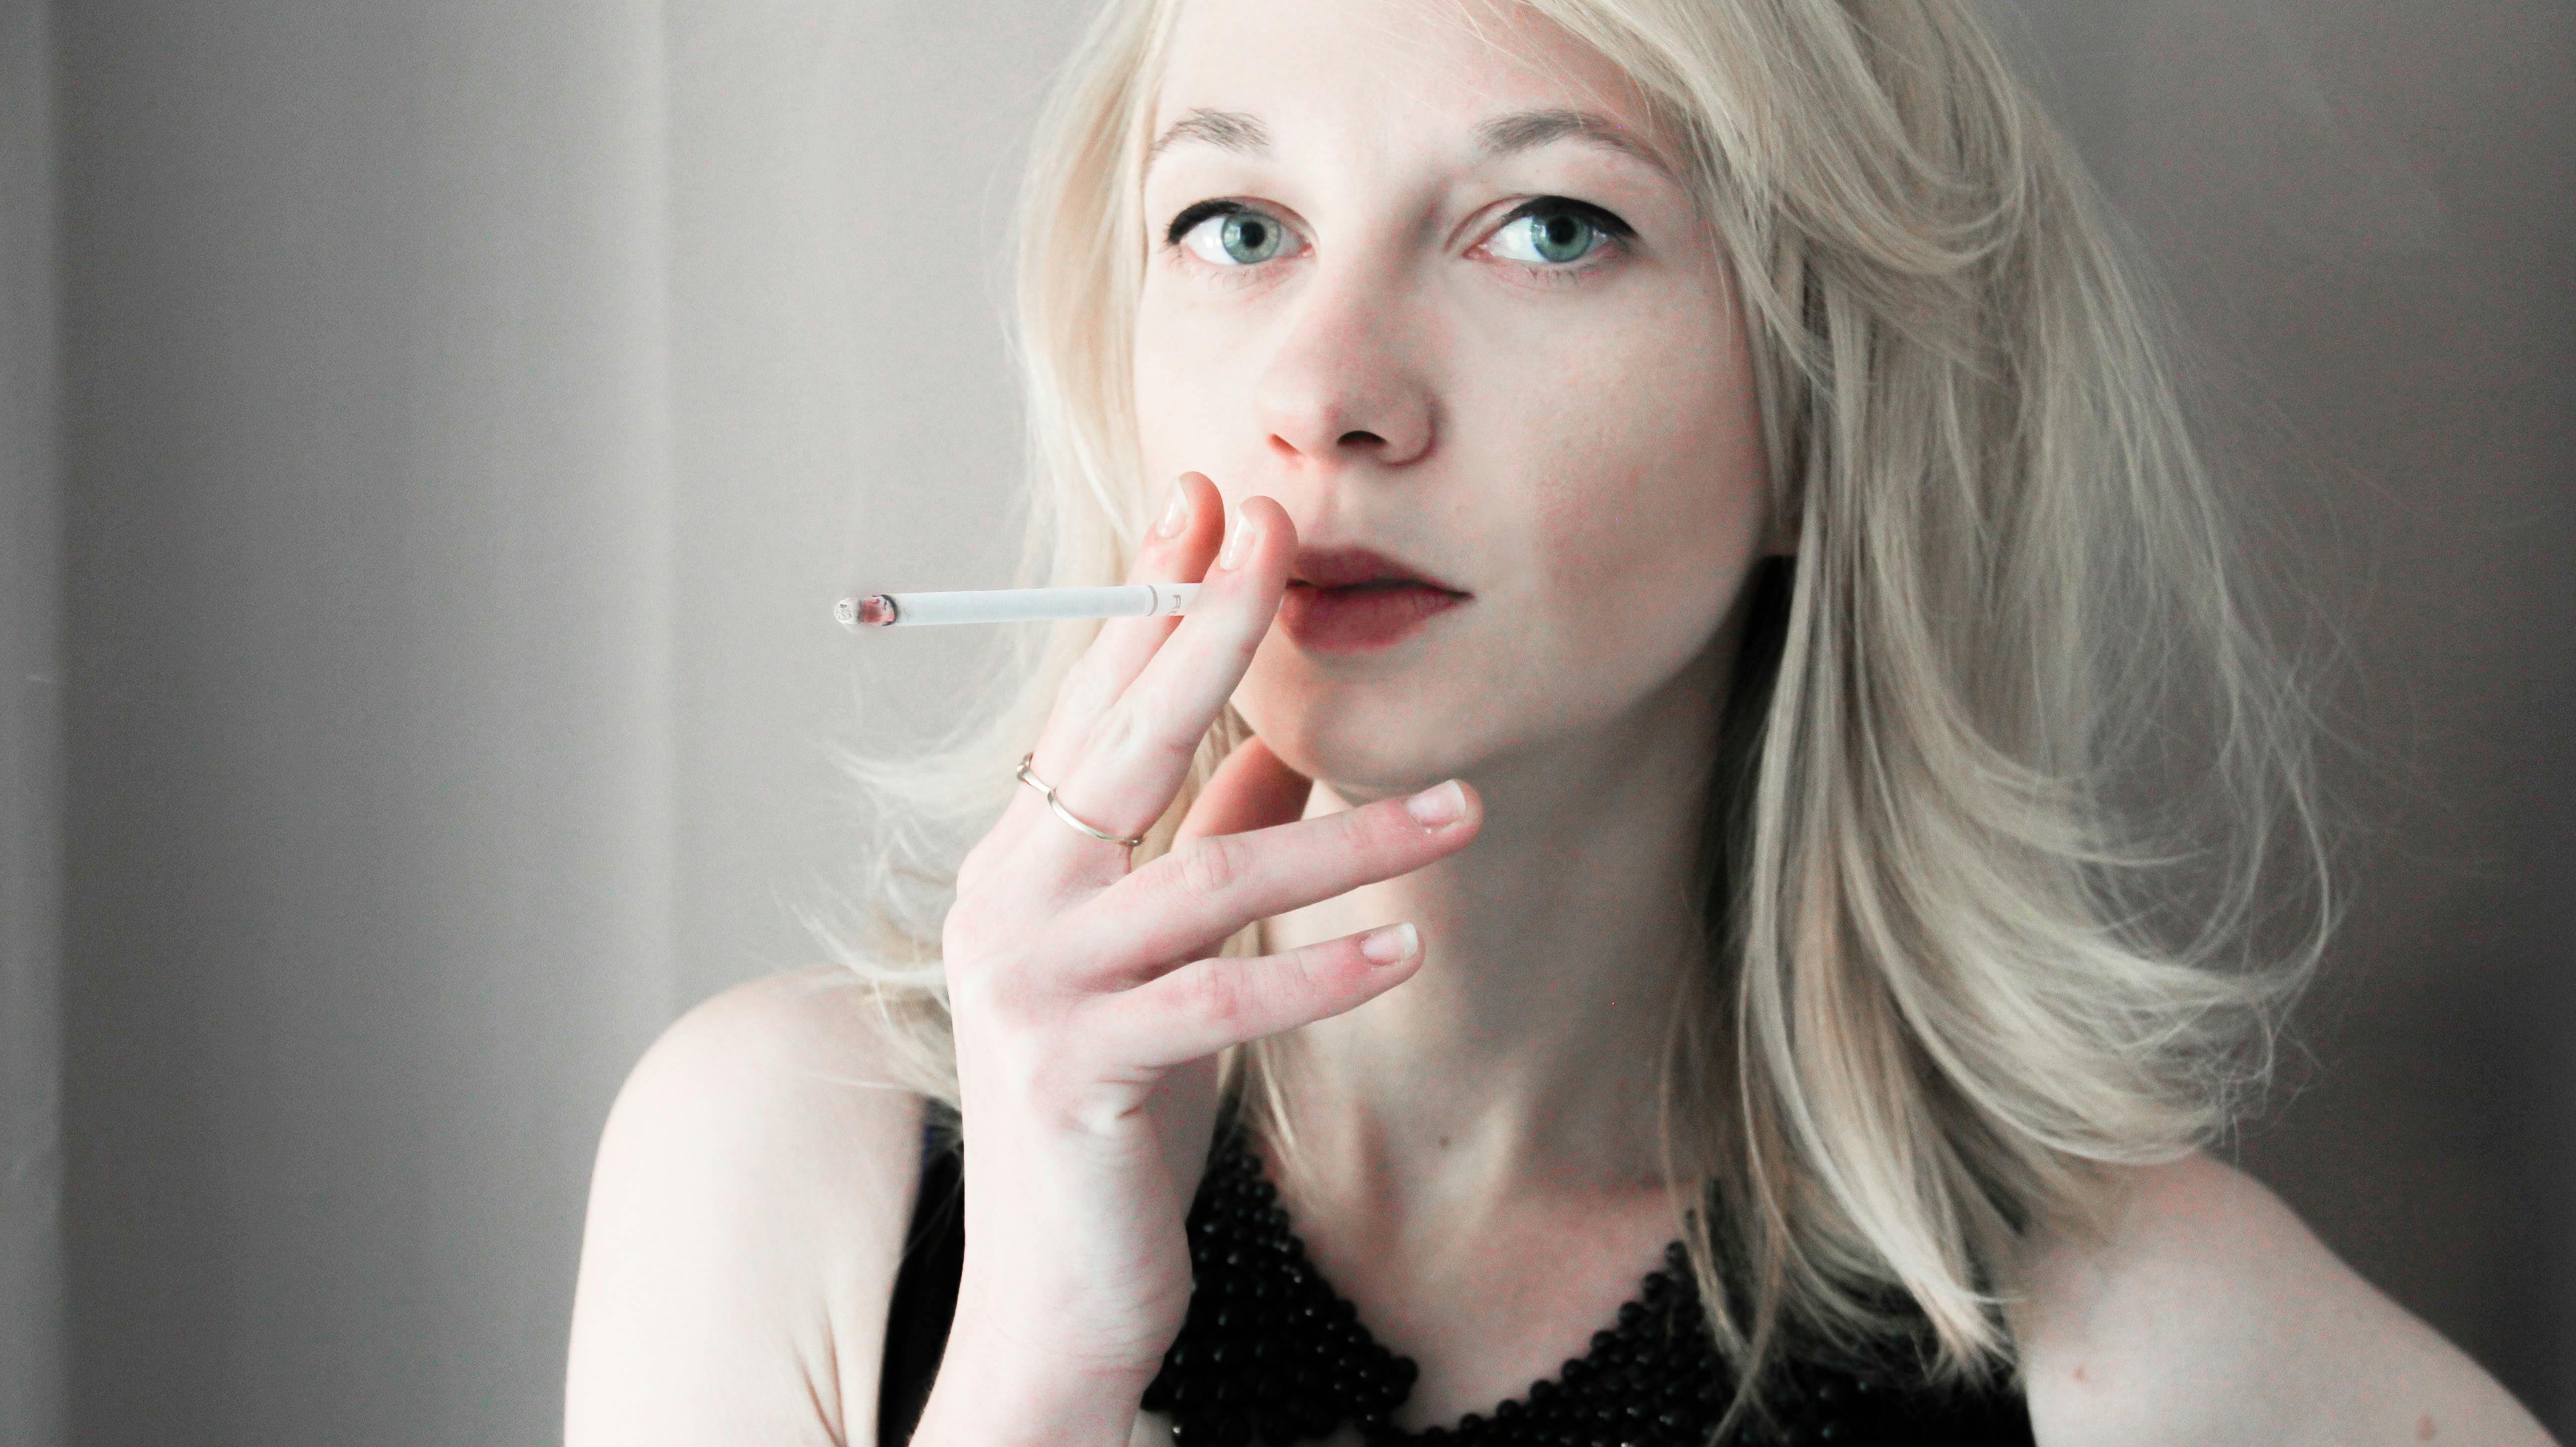 タバコの棒を持っている女性 無料の写真素材